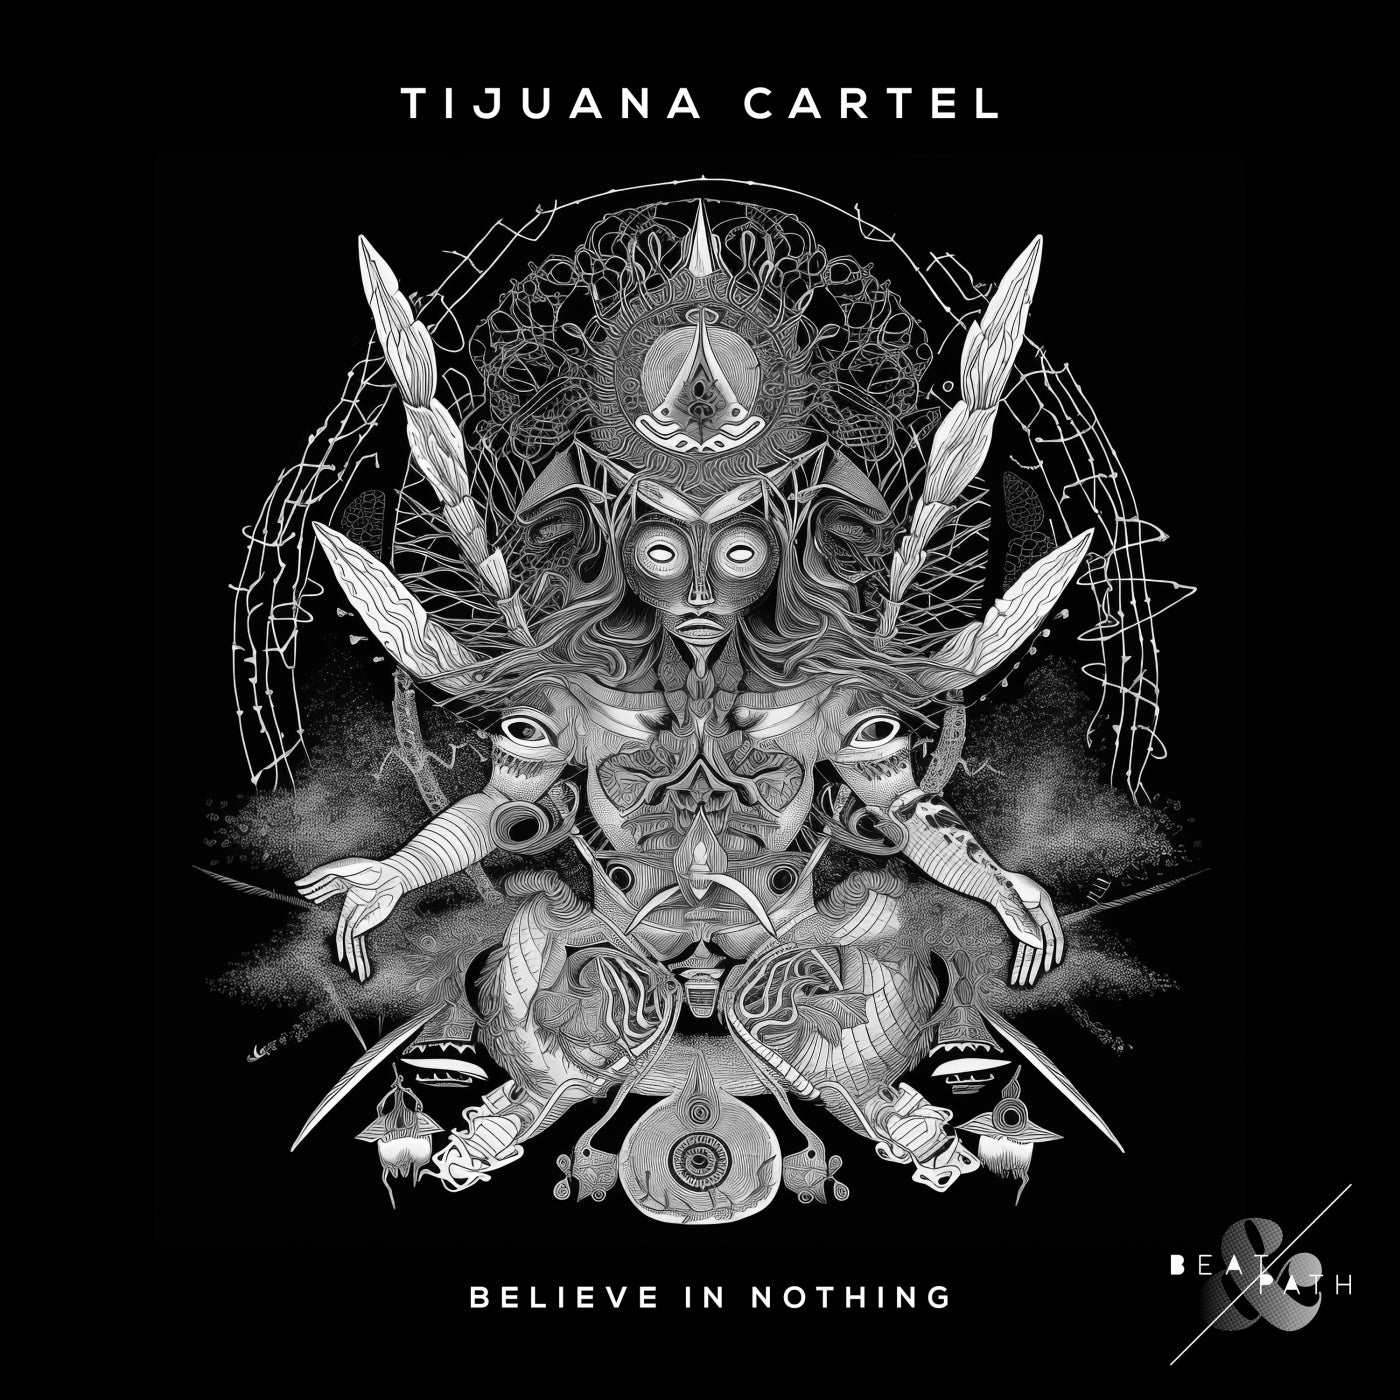 Tijuana Cartel - Believe in Nothing [Beat & Path]